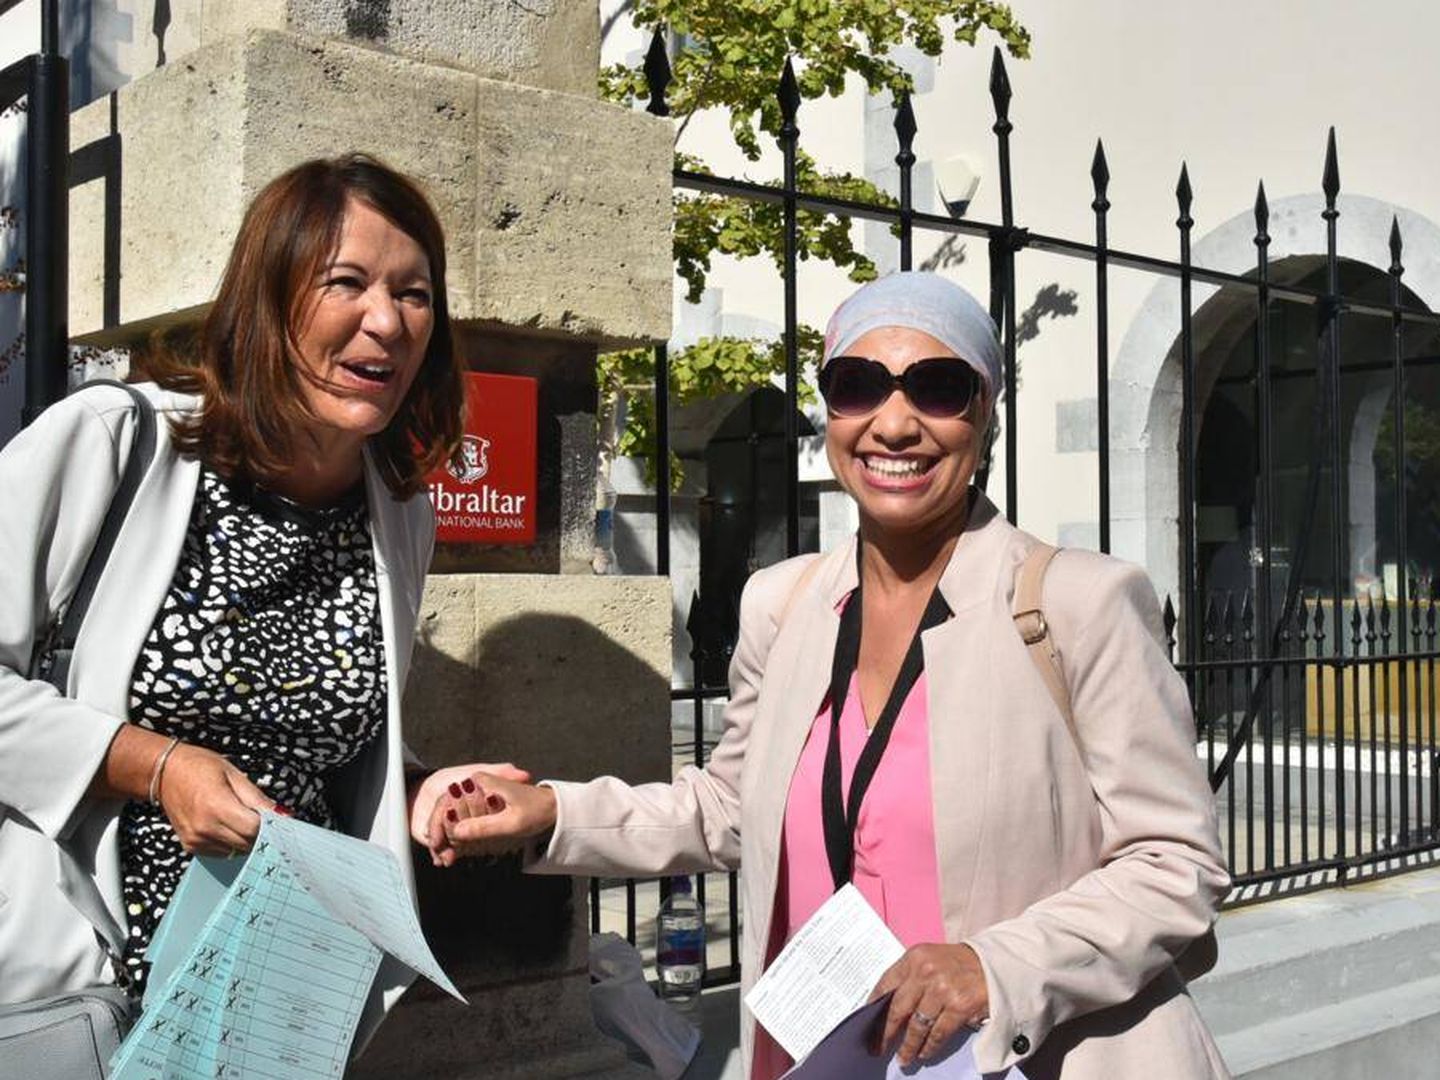 Simpatizantes del partido Together Gibraltar, en la puerta de un colegio electoral (Toñi Guerrero).